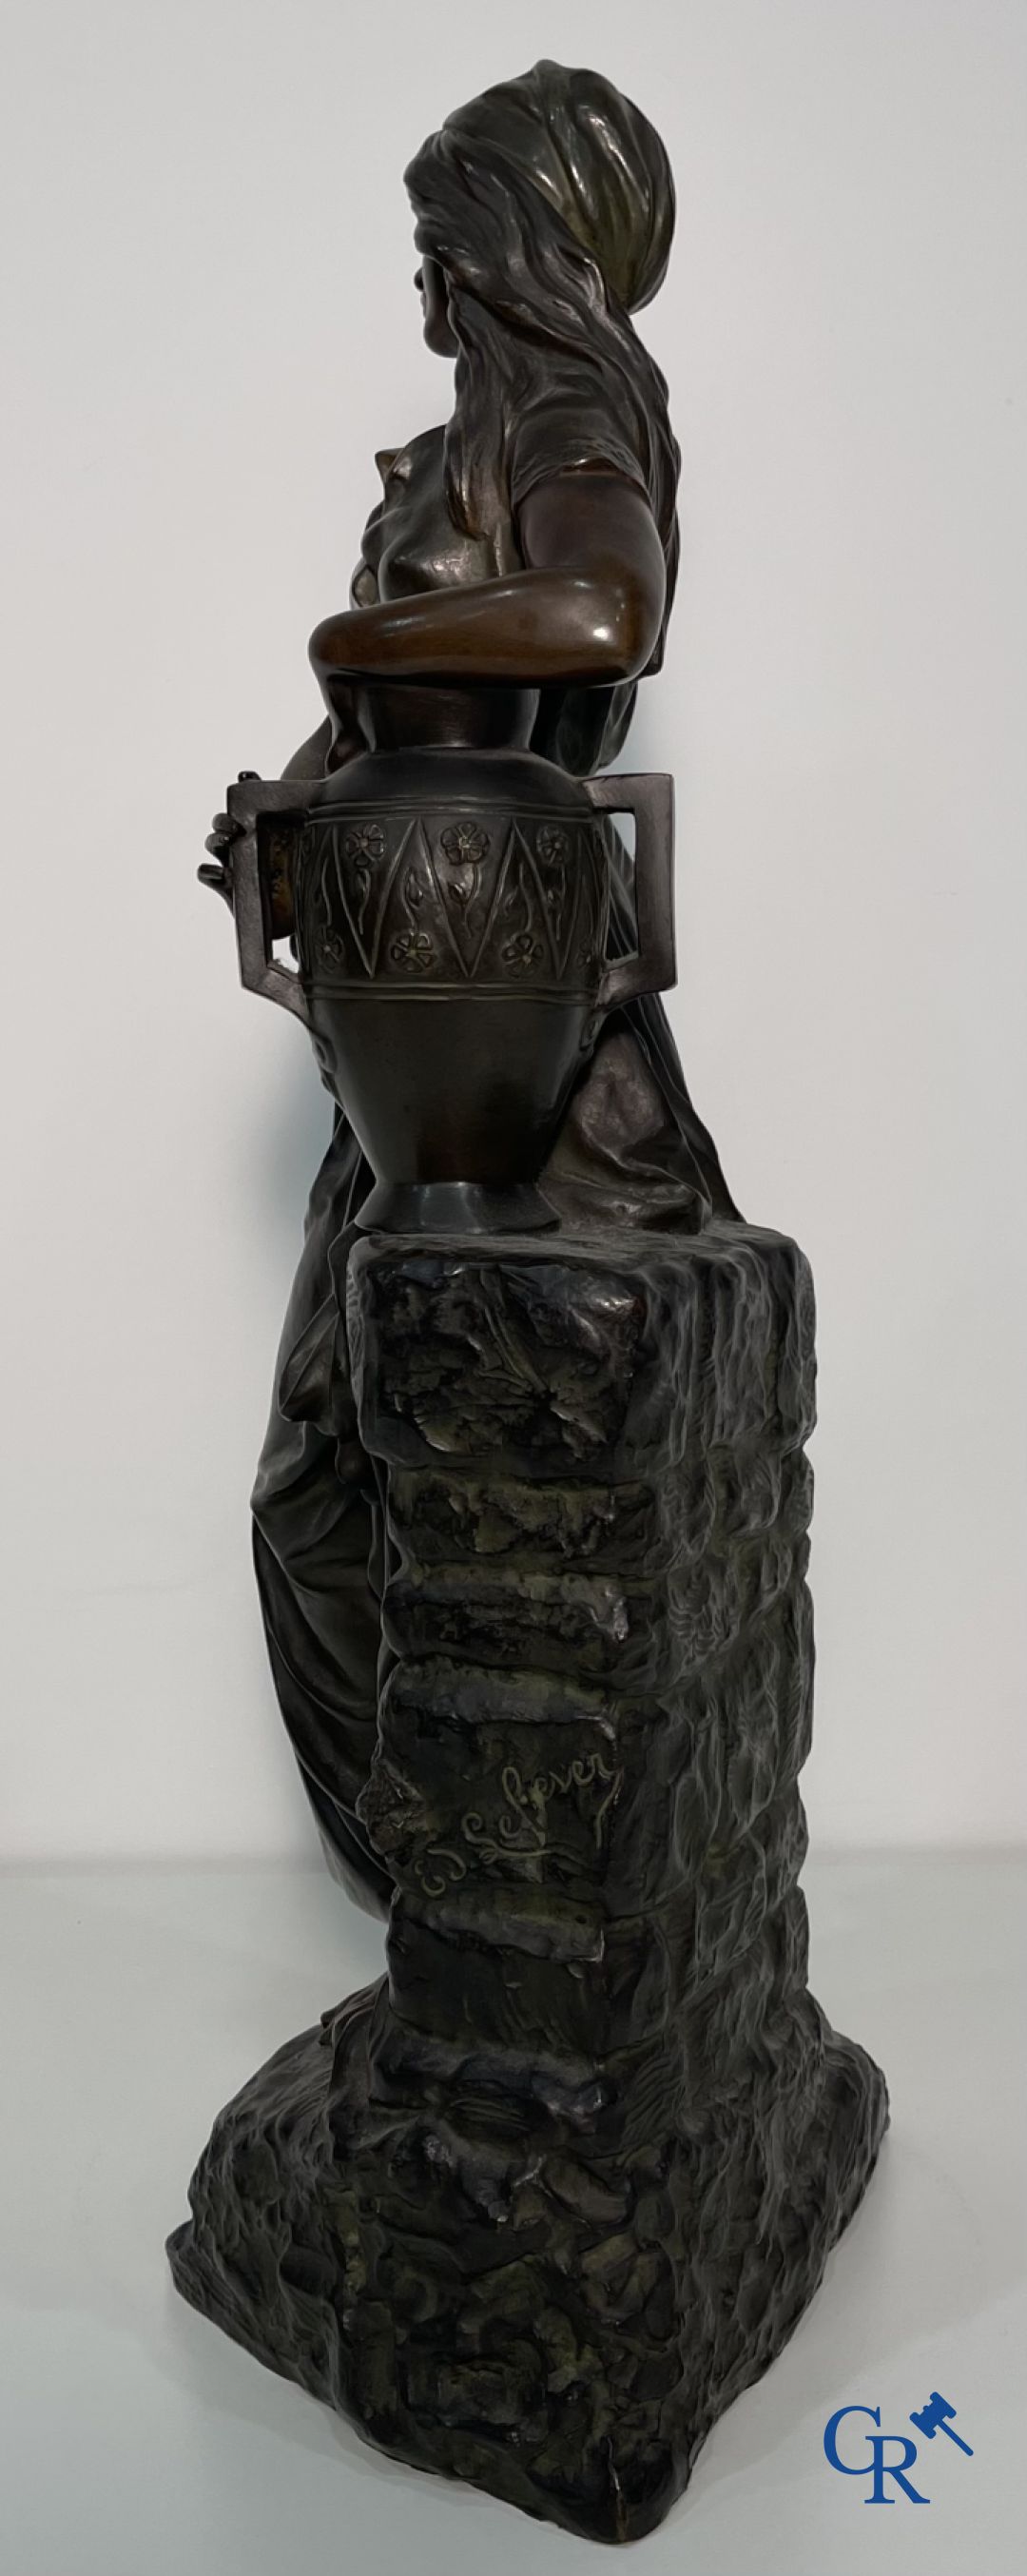 Edmond Lefever: (Ypres 1839-Schaarbeek 1911) "Rebecca" oriental bronze statue. - Image 7 of 16